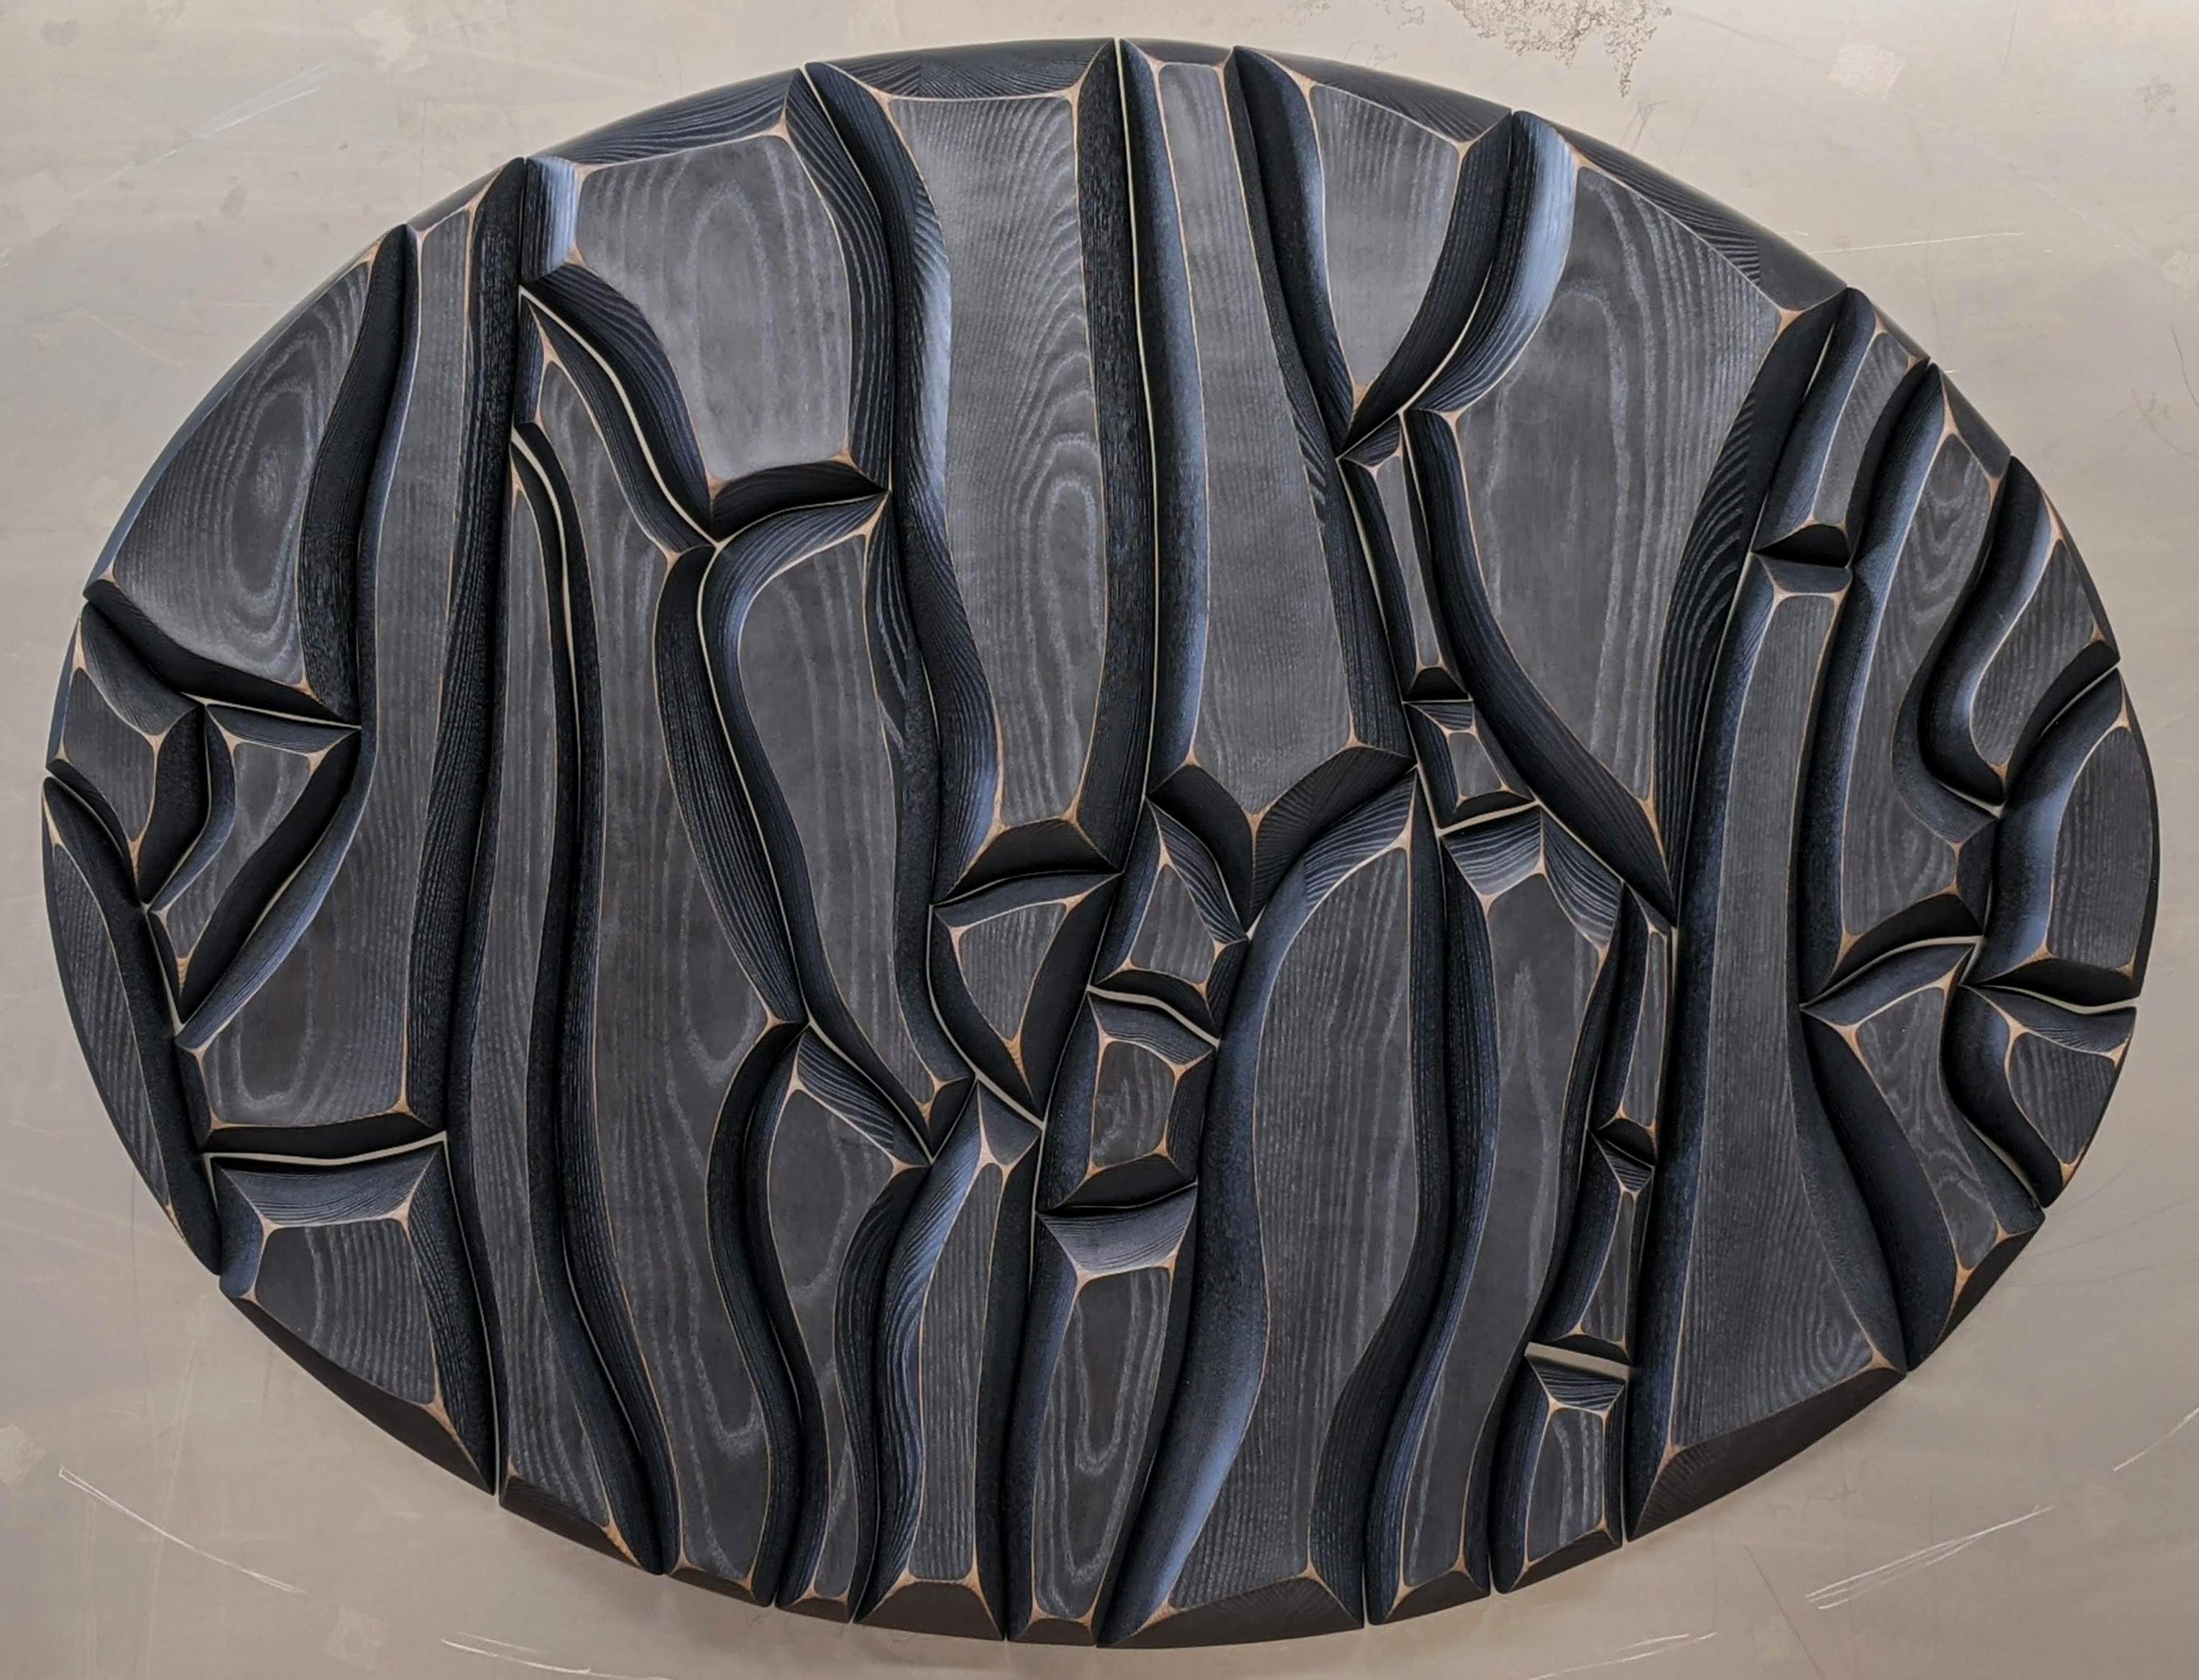 Abstract Sculpture Marty Mackenzie - Sculpture abstraite en bois non conventionnelle, 2021